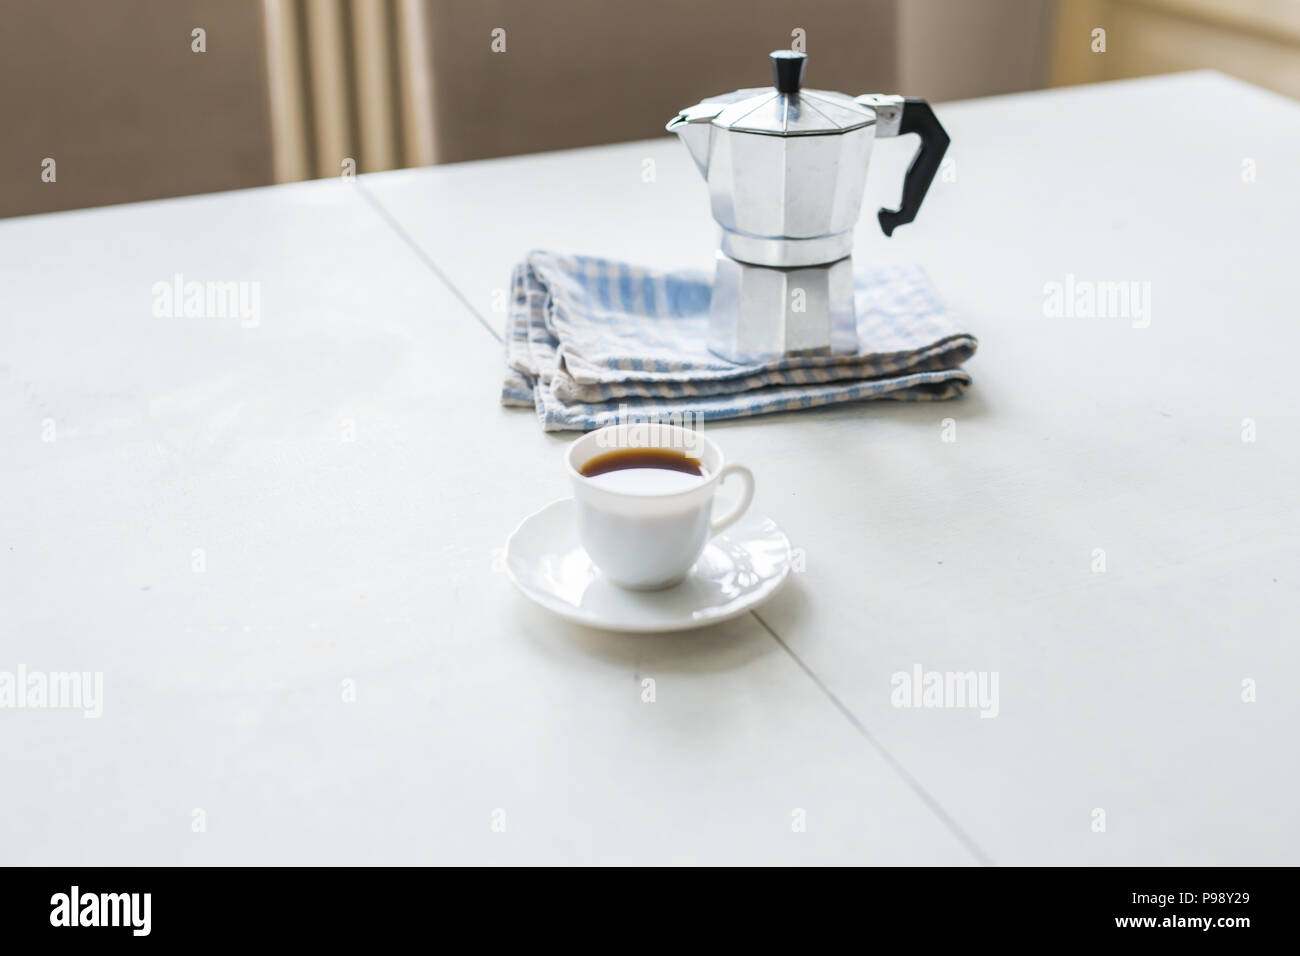 https://c8.alamy.com/compes/p98y29/taza-de-cafe-cafetera-hervidor-de-agua-sobre-una-mesa-blanca-p98y29.jpg